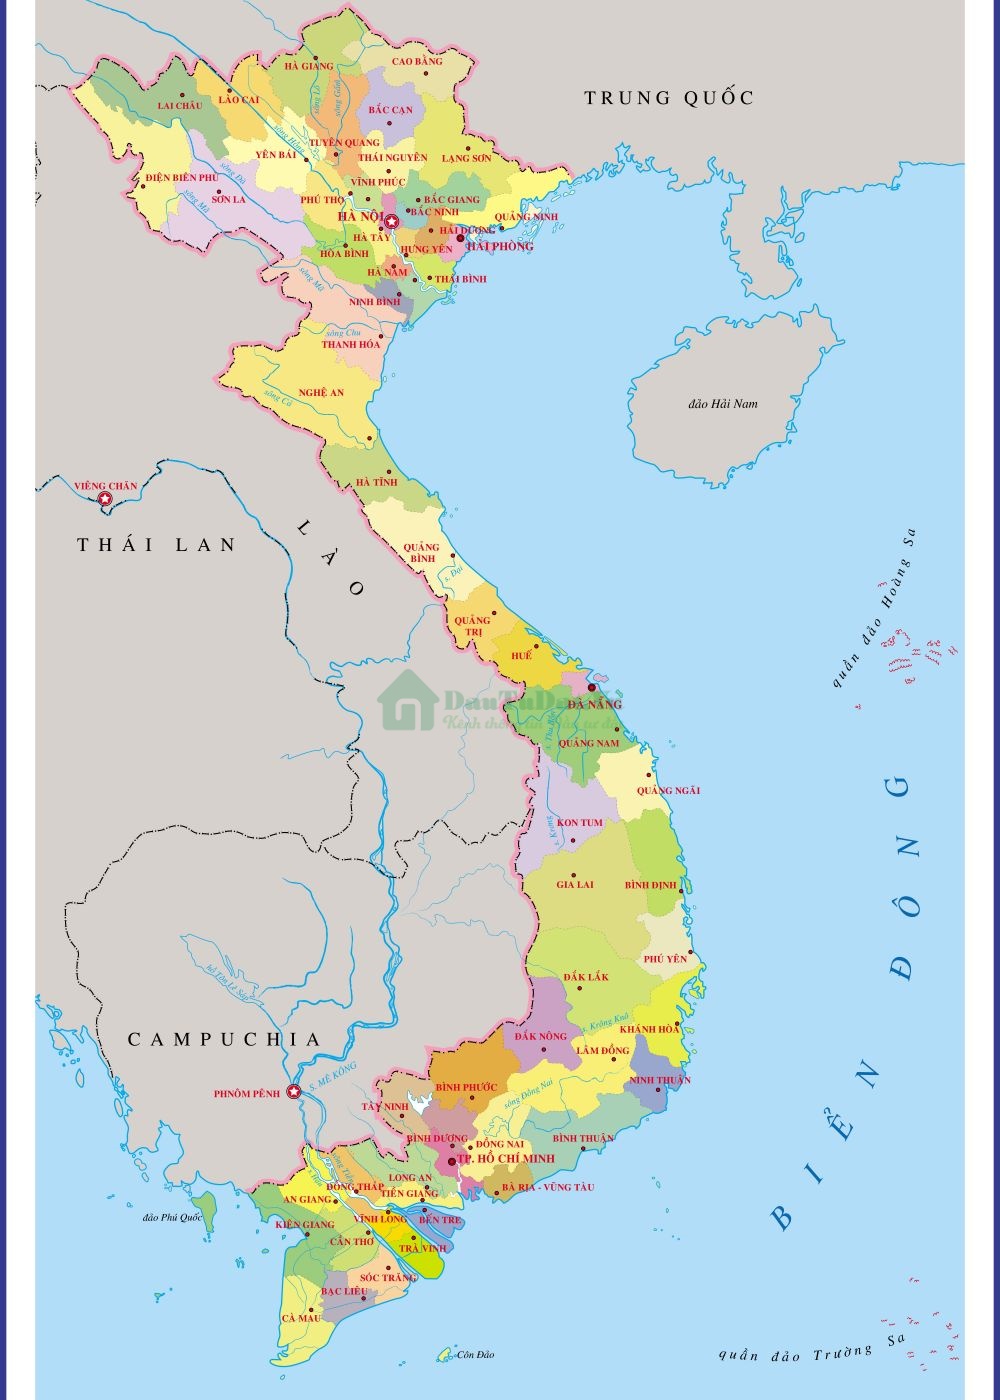 Khám phá bản đồ Việt Nam 2022 để đón nhận những thay đổi đầy thú vị, từ các công trình đô thị đến các di sản văn hoá. Hãy cùng nhìn lại quá trình phát triển của đất nước qua bản đồ đầy màu sắc và đa dạng. Đừng bỏ lỡ cơ hội tìm hiểu về đất nước yêu thương của chúng ta!